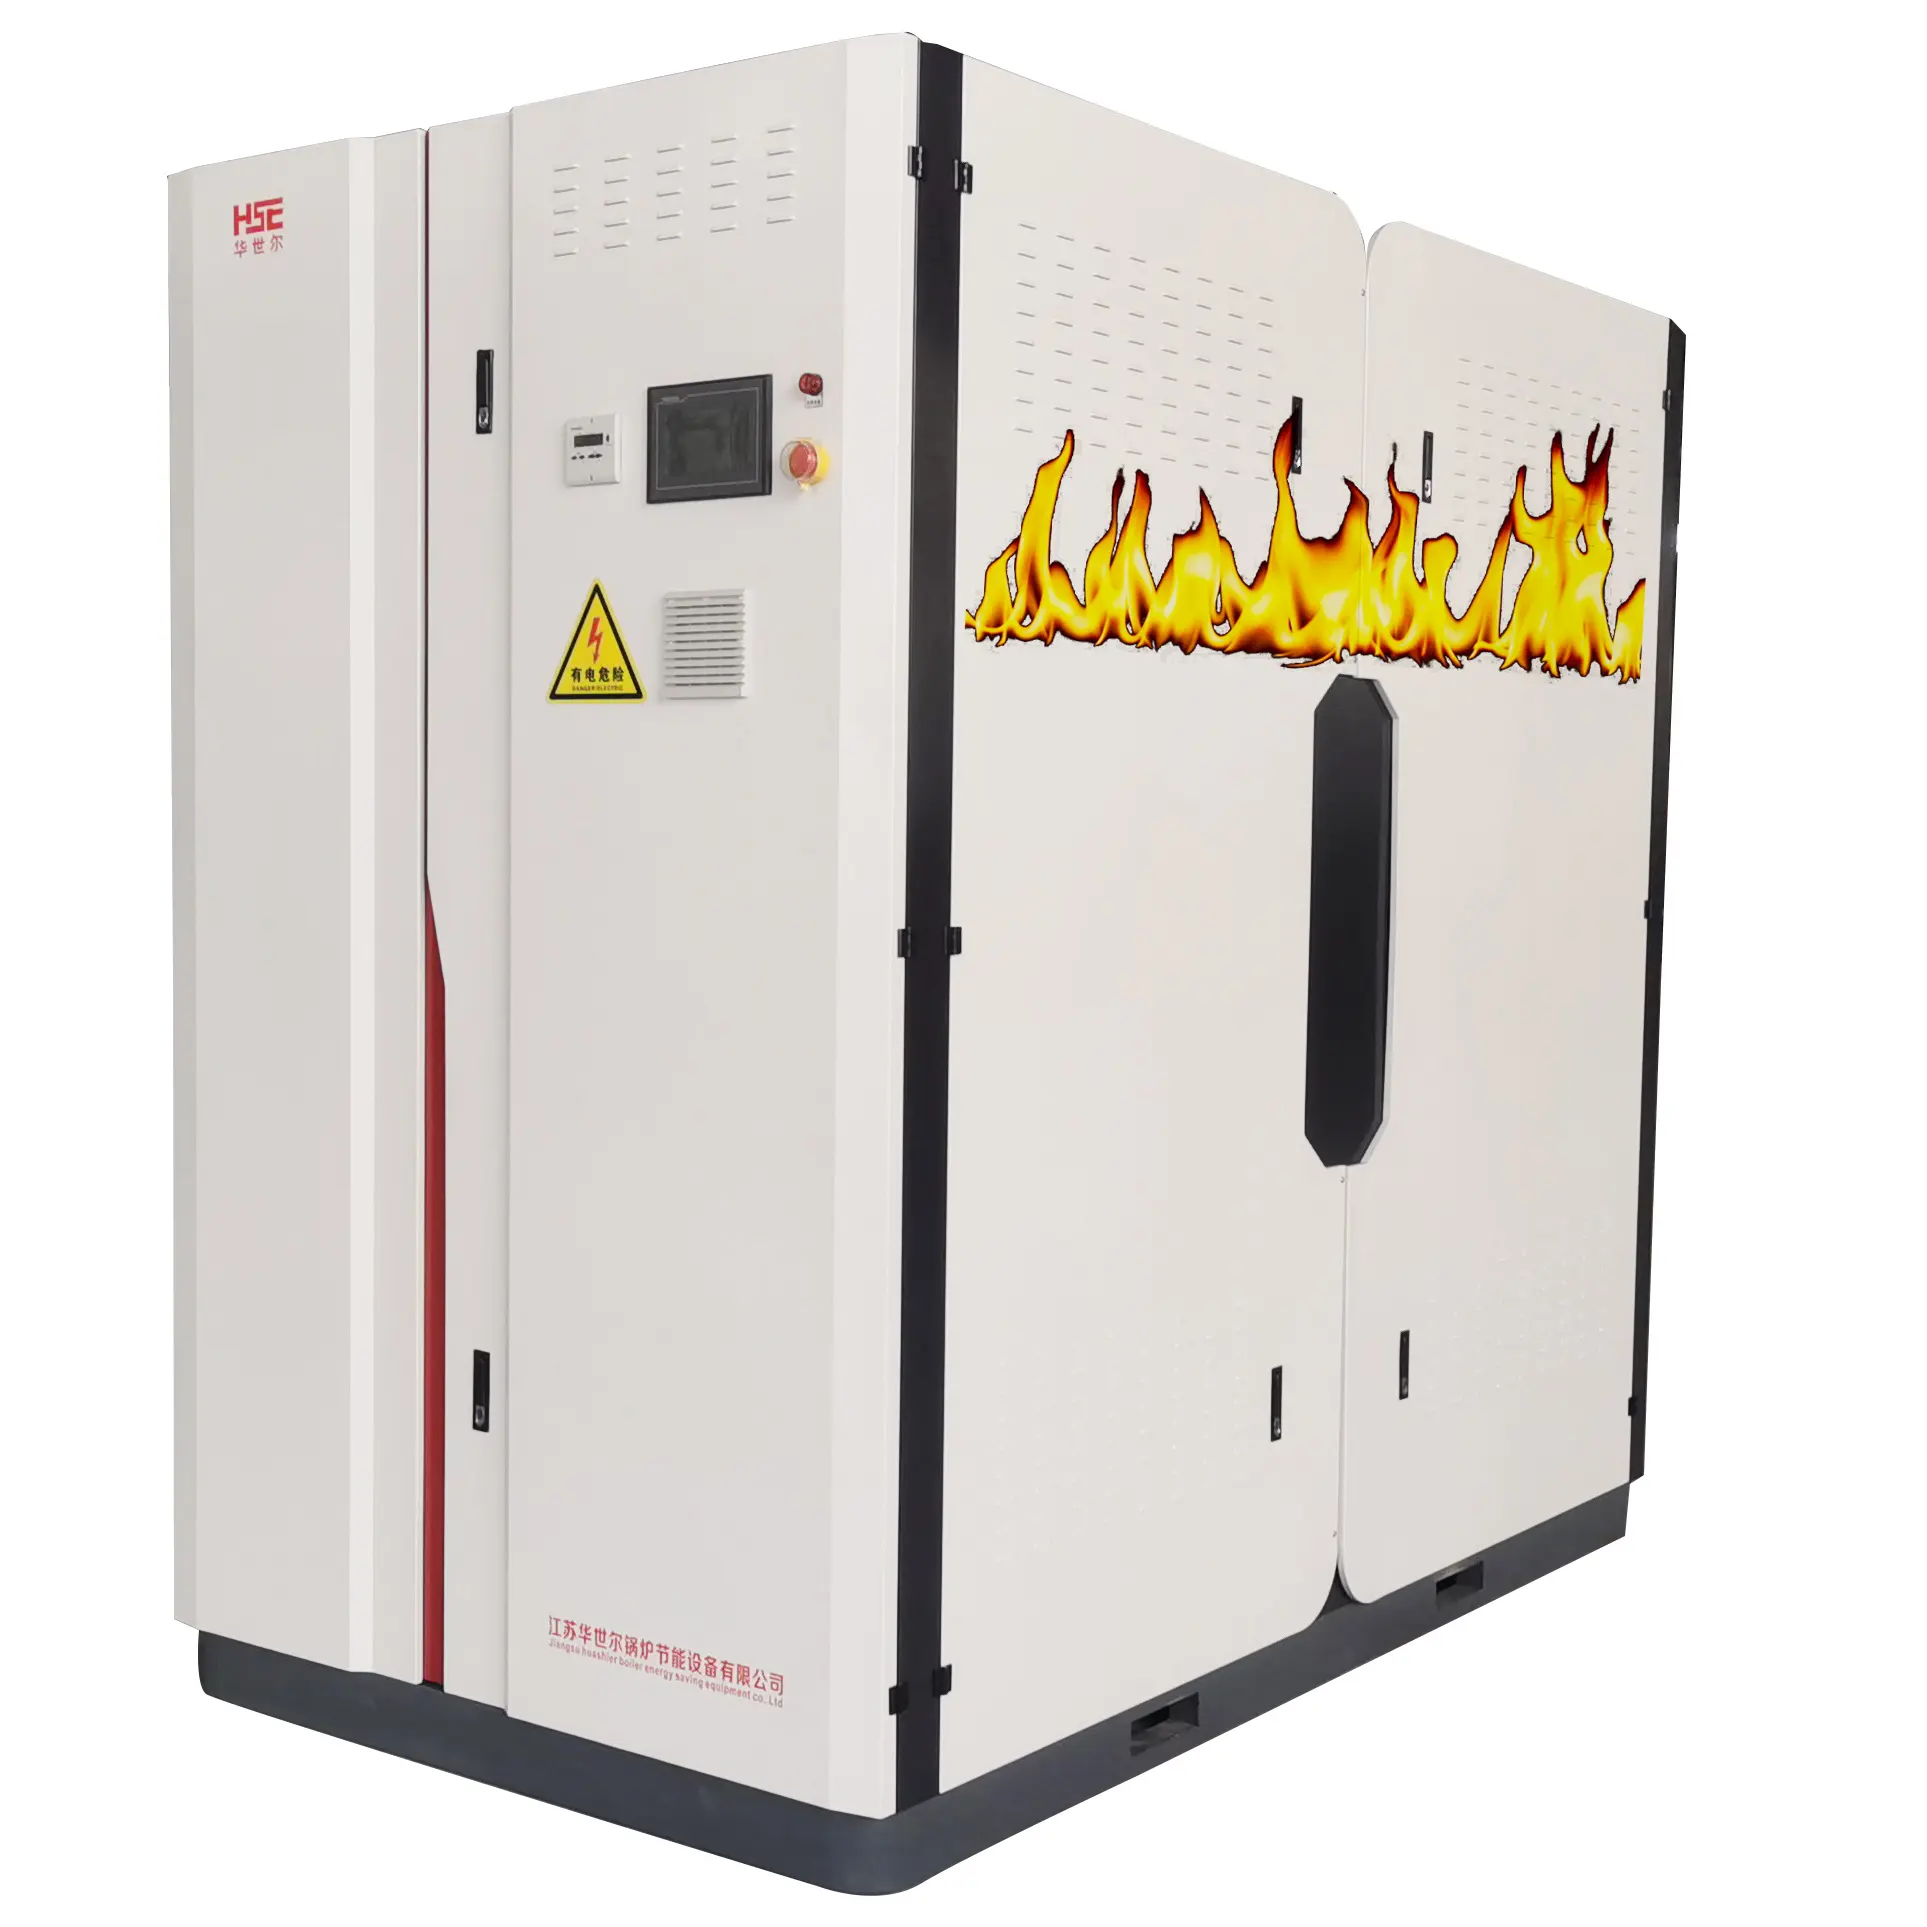 Boiler Air panas udara panas Premix yang sangat efisien dengan teknologi terkemuka di industri untuk peningkatan kinerja pemanas Boiler vakum